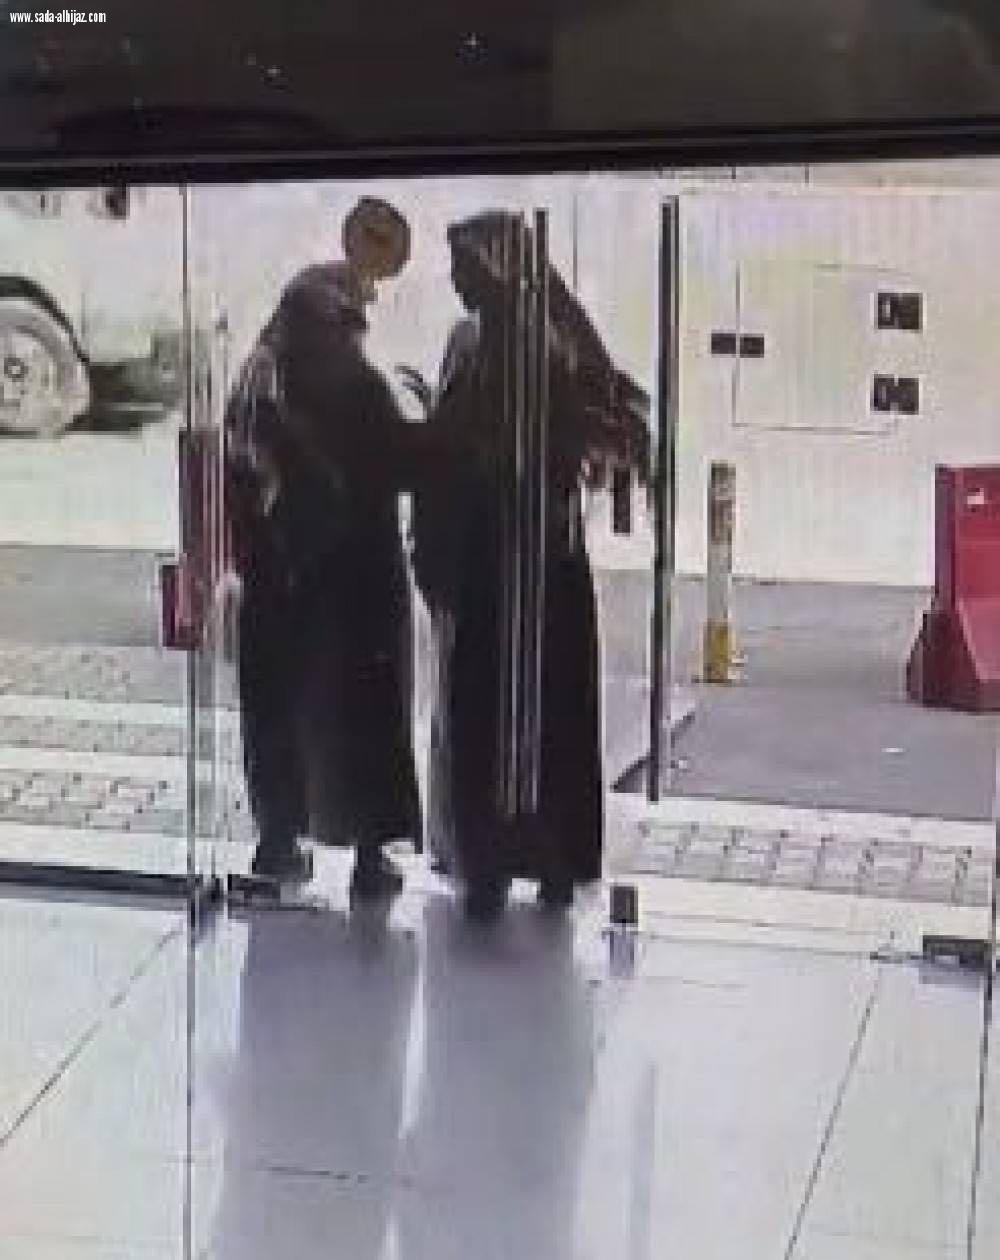 شرطة الرياض: القبض على 7 جناة أقروا بارتكاب 17 جريمة سرقة للمسنين